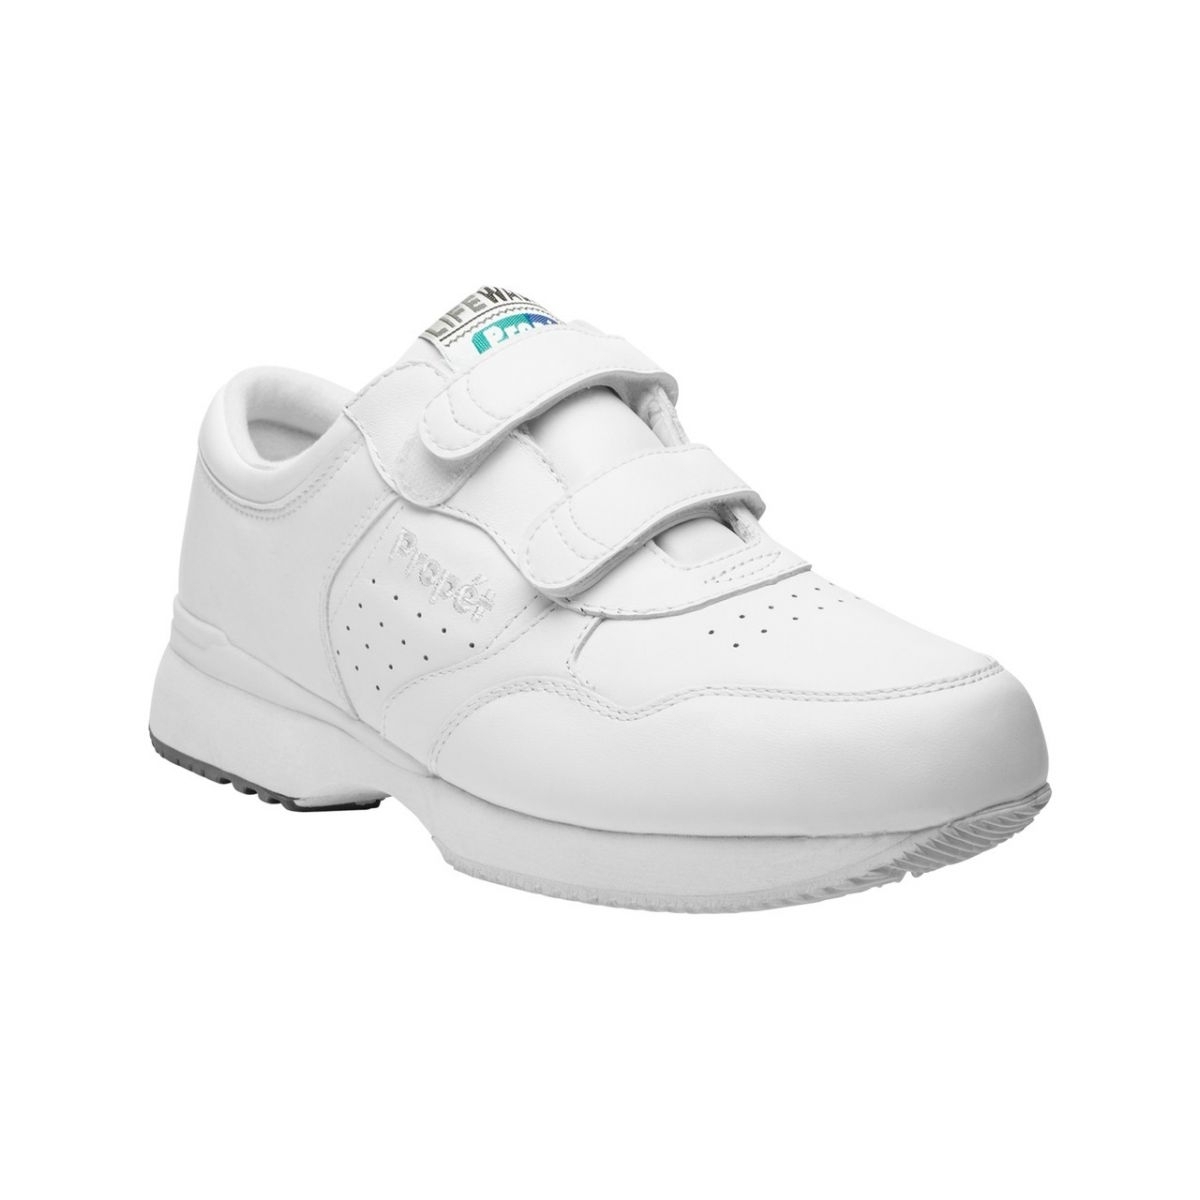 Propet Men's Life Walker Strap Shoe White - M3705WHT WHITE - WHITE, 15 3X-Wide